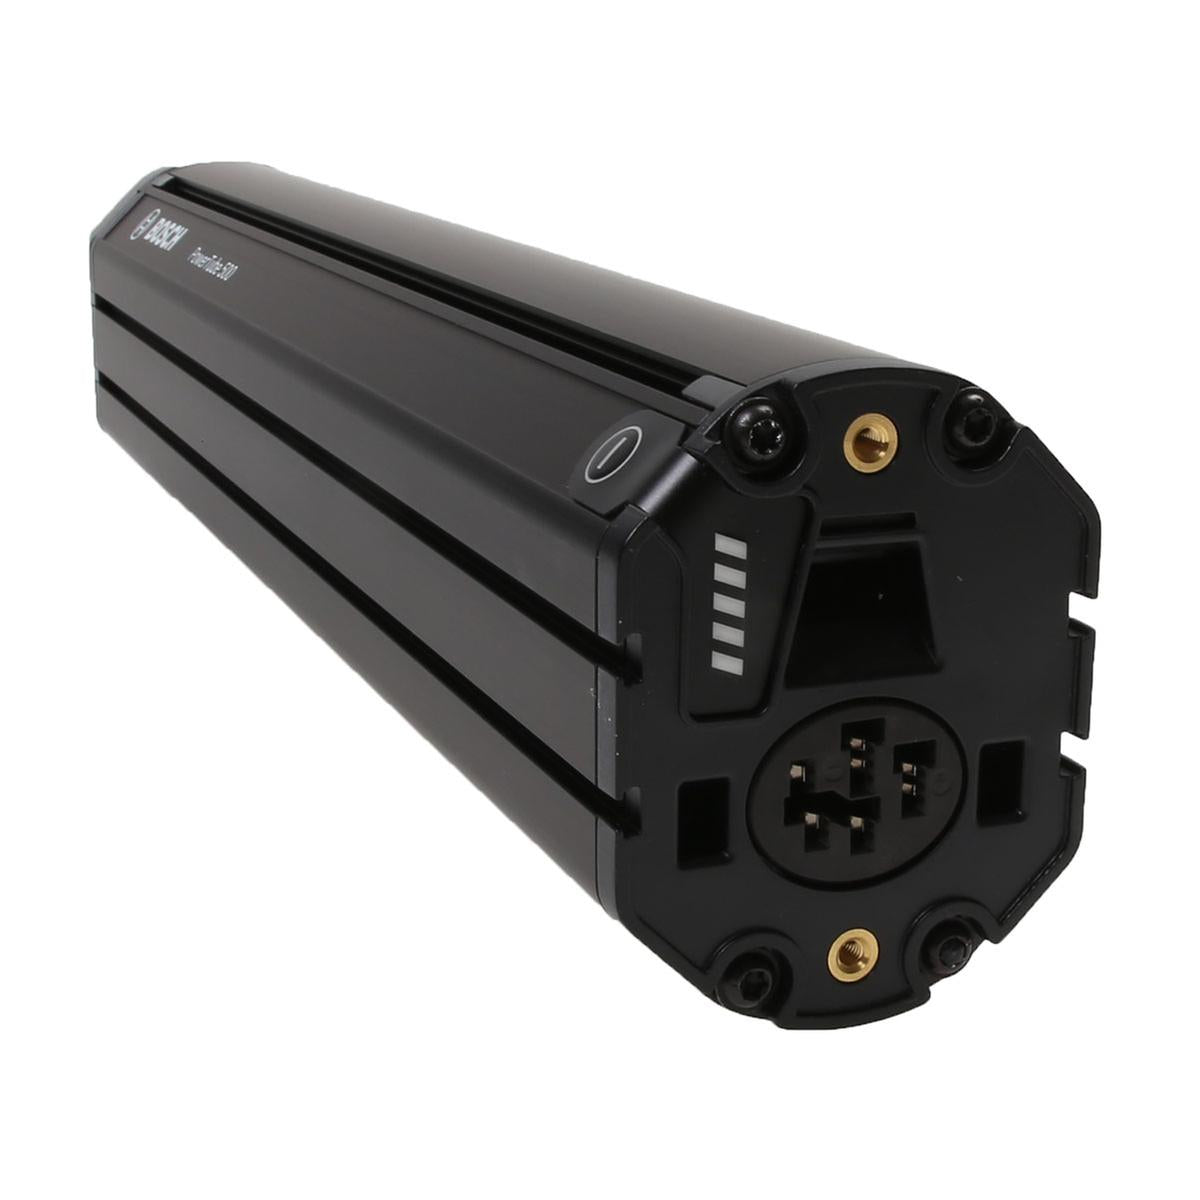 Bosch PowerTube 625 vertical battery